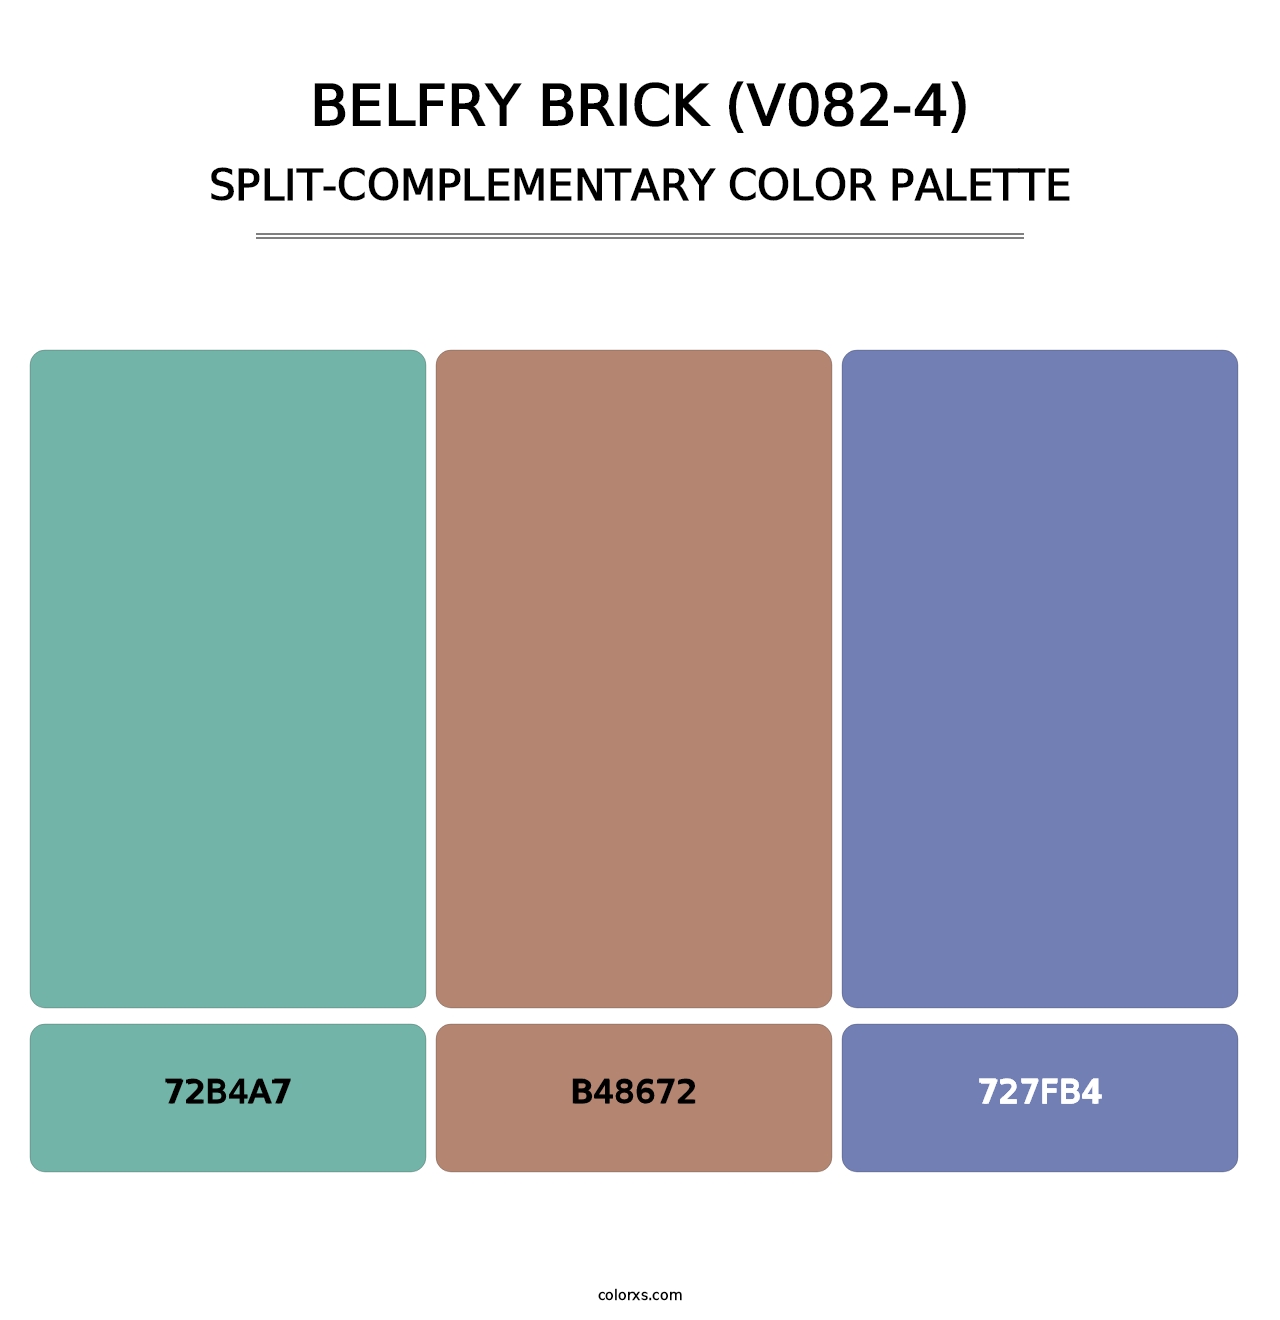 Belfry Brick (V082-4) - Split-Complementary Color Palette